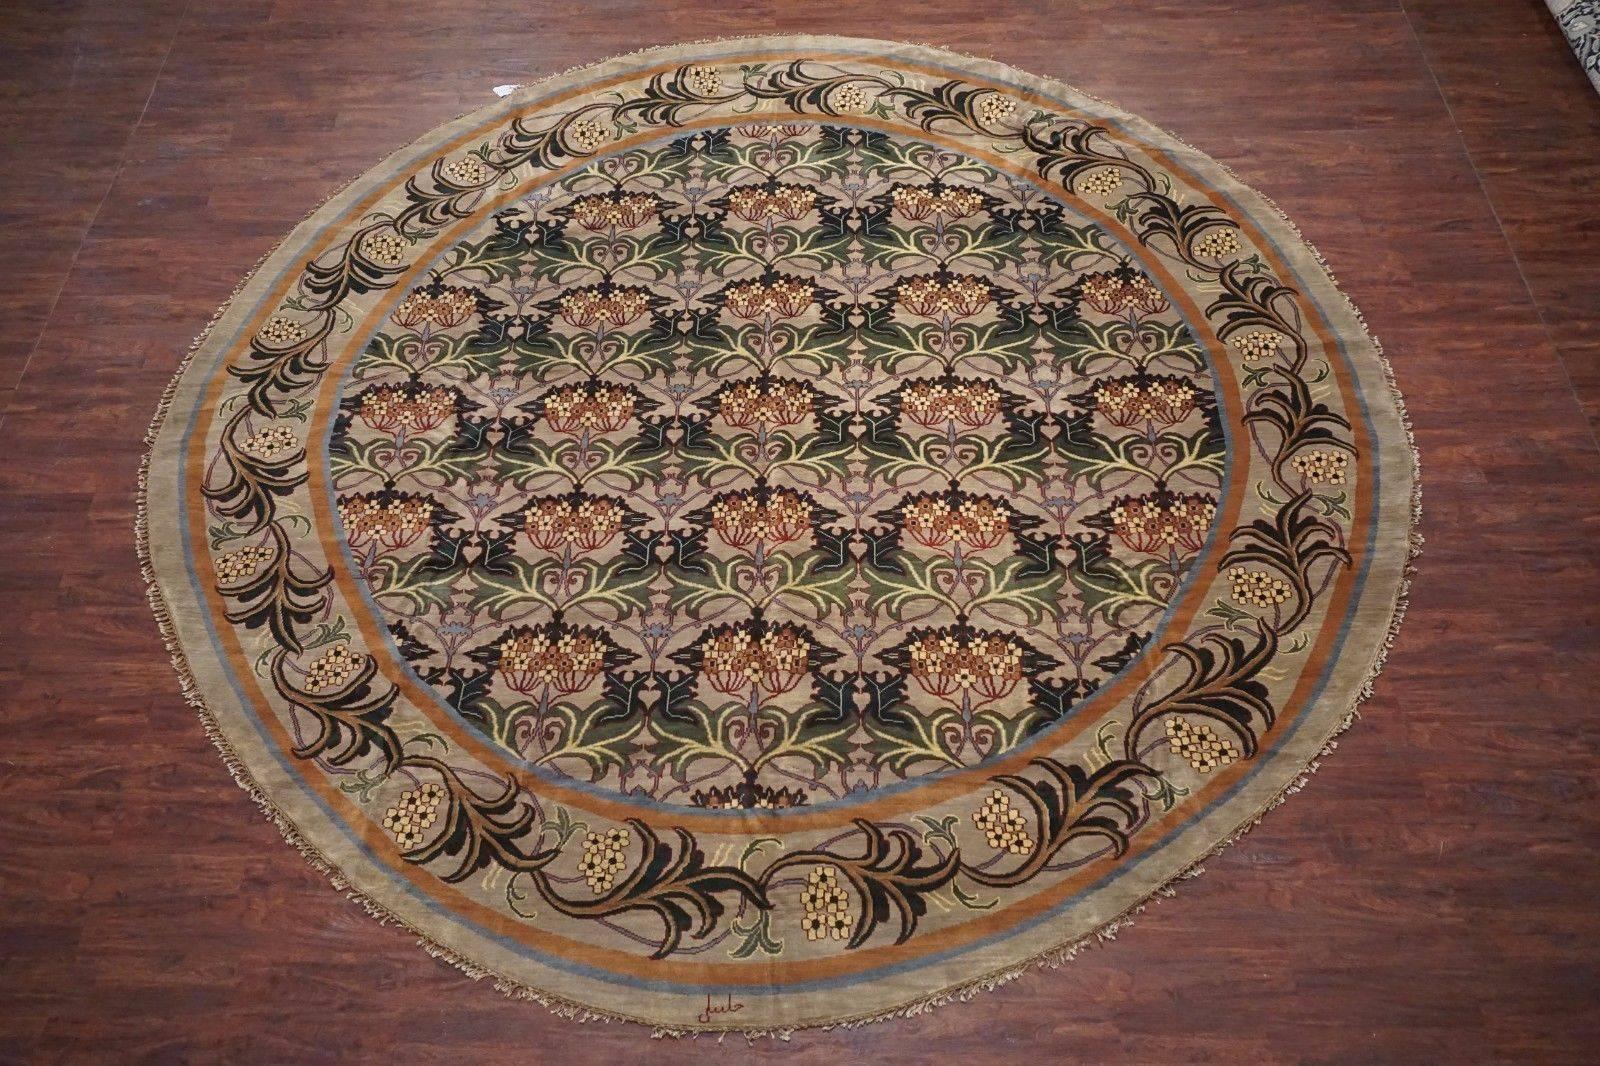 Round William Morris style rug, 

circa 1990

Measures: 13' 10